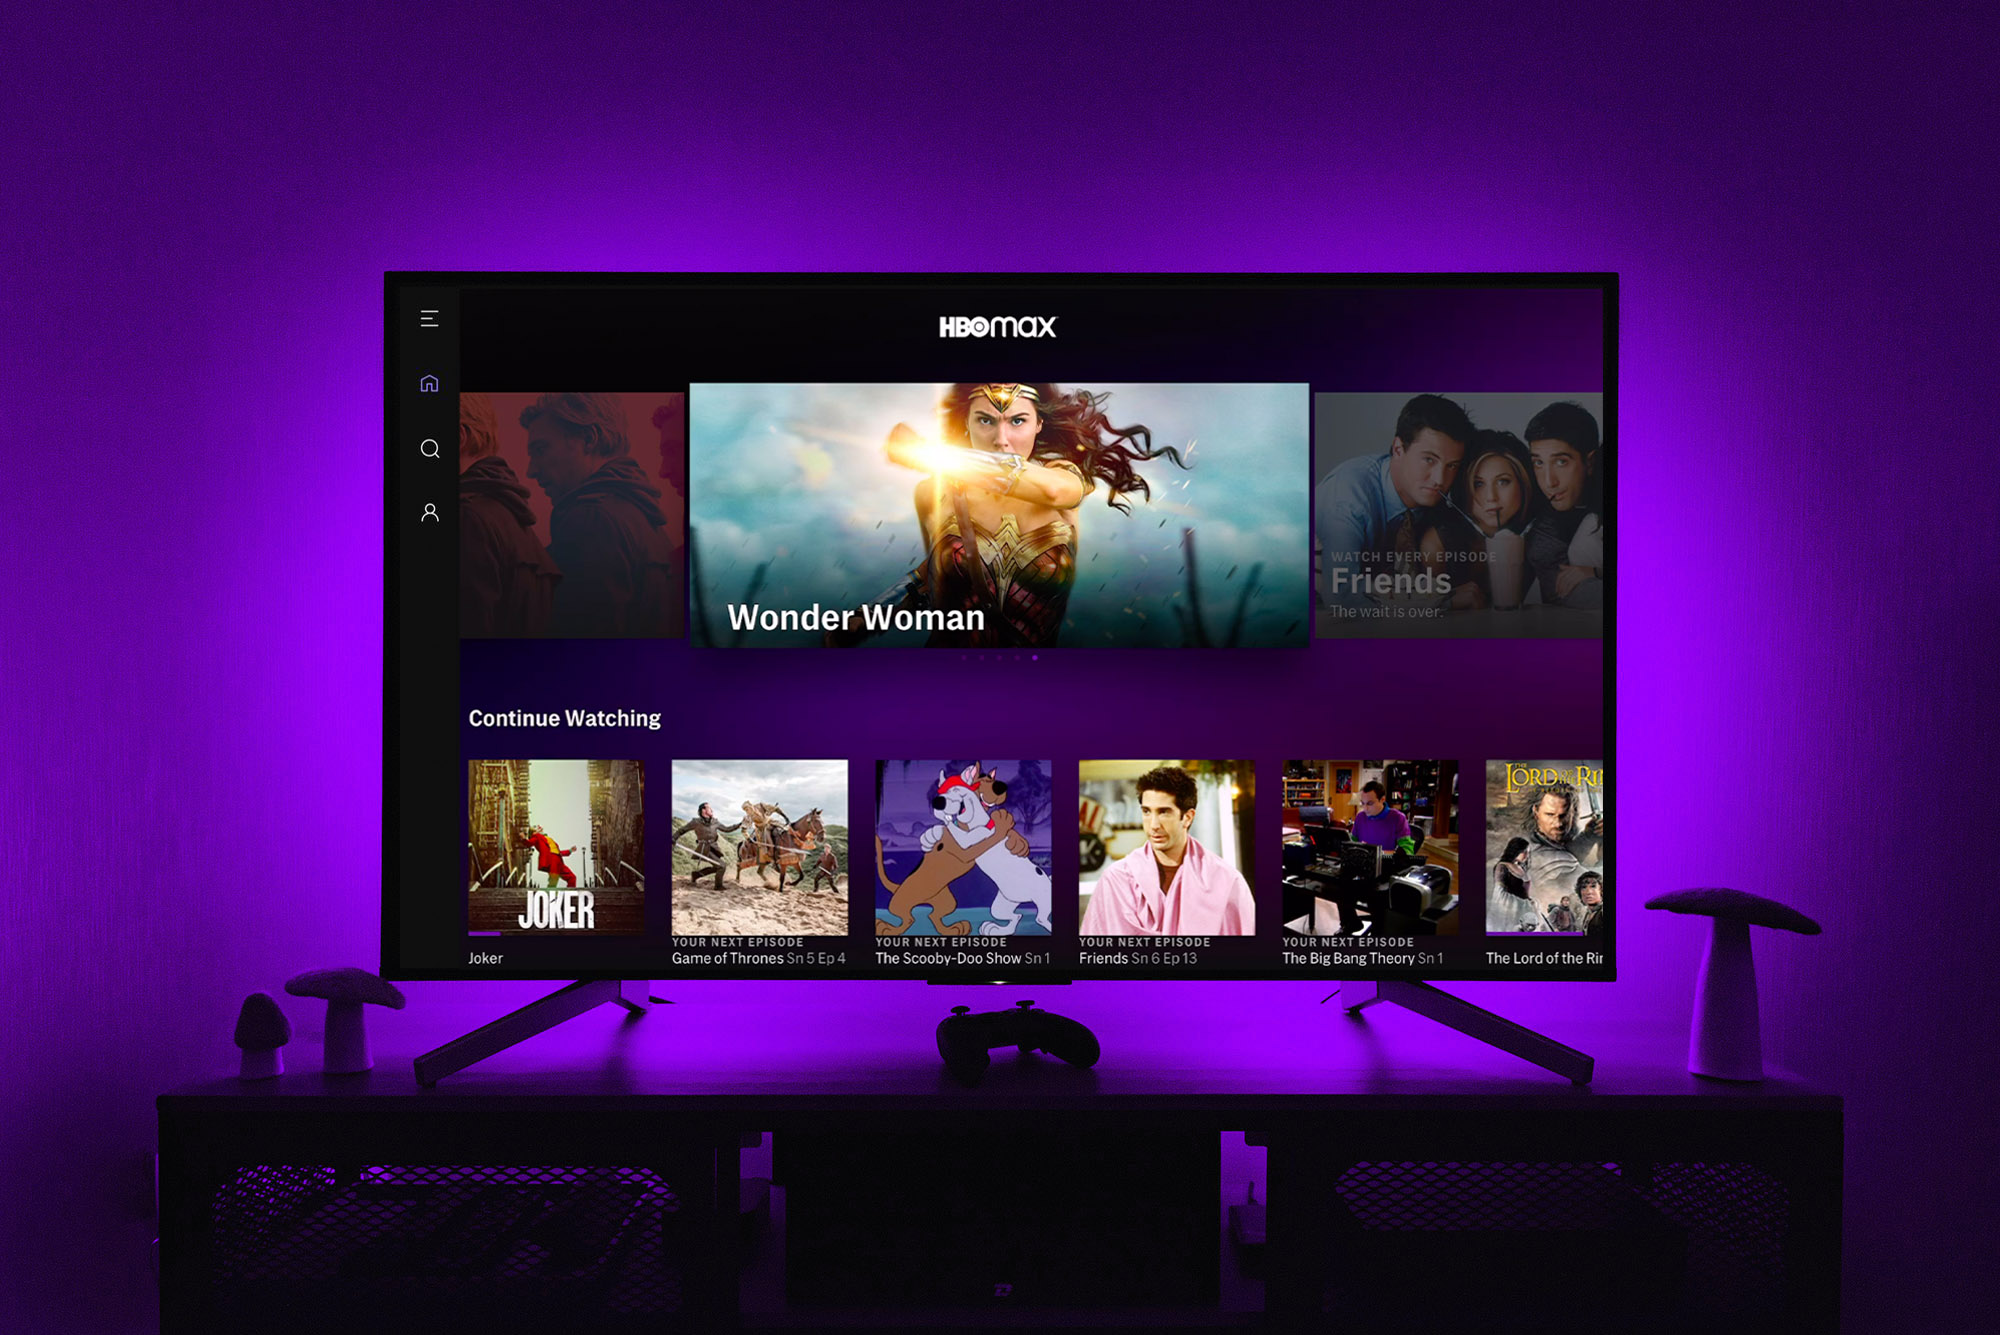 Die HBO Max-App auf einem Fernsehbildschirm, während violette Lichter die Wand dahinter beleuchten.